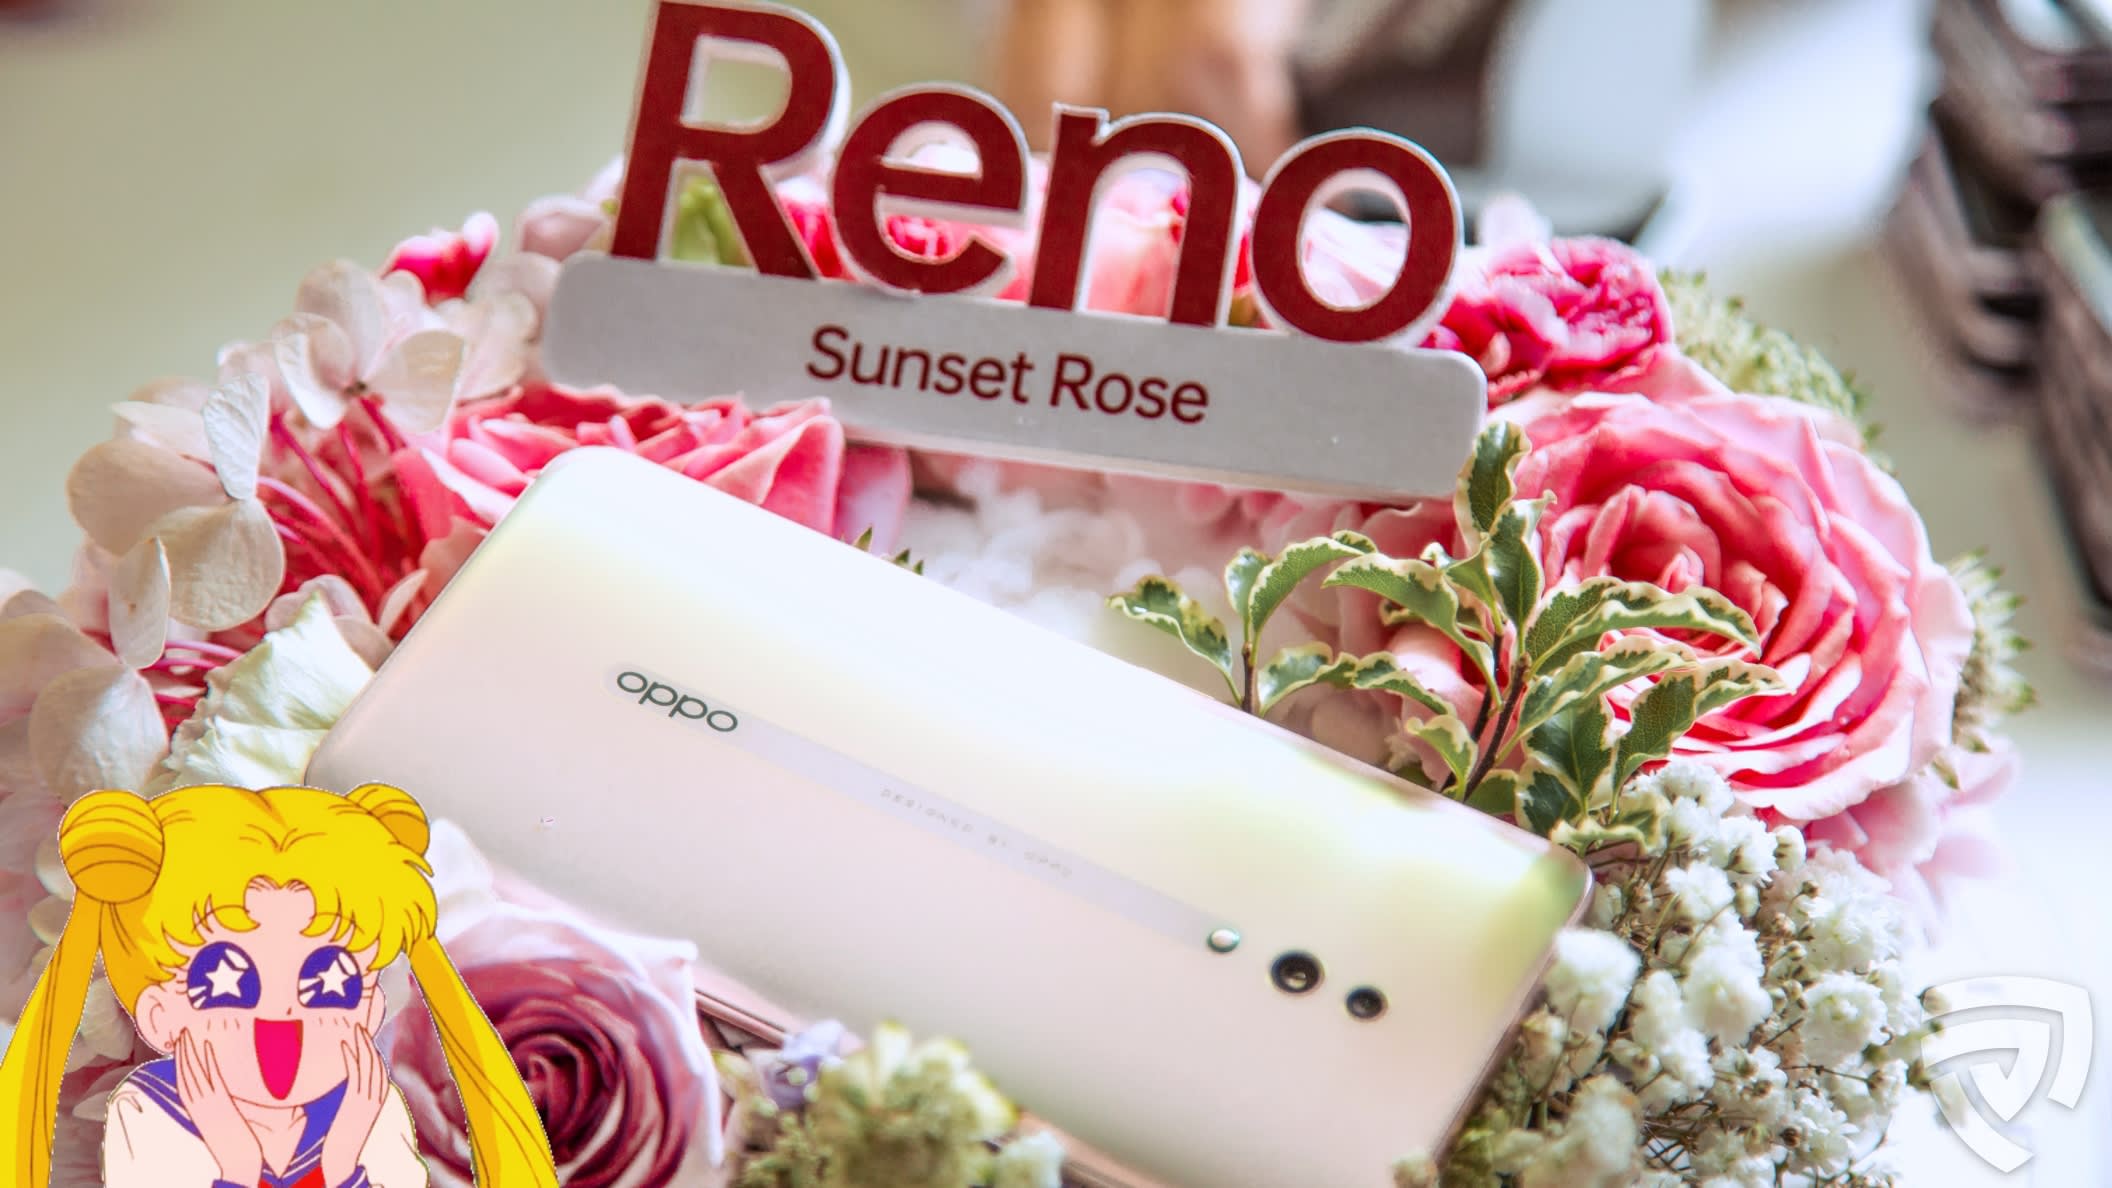 Oppo Reno Sunset Rose Cover Photo.JPG